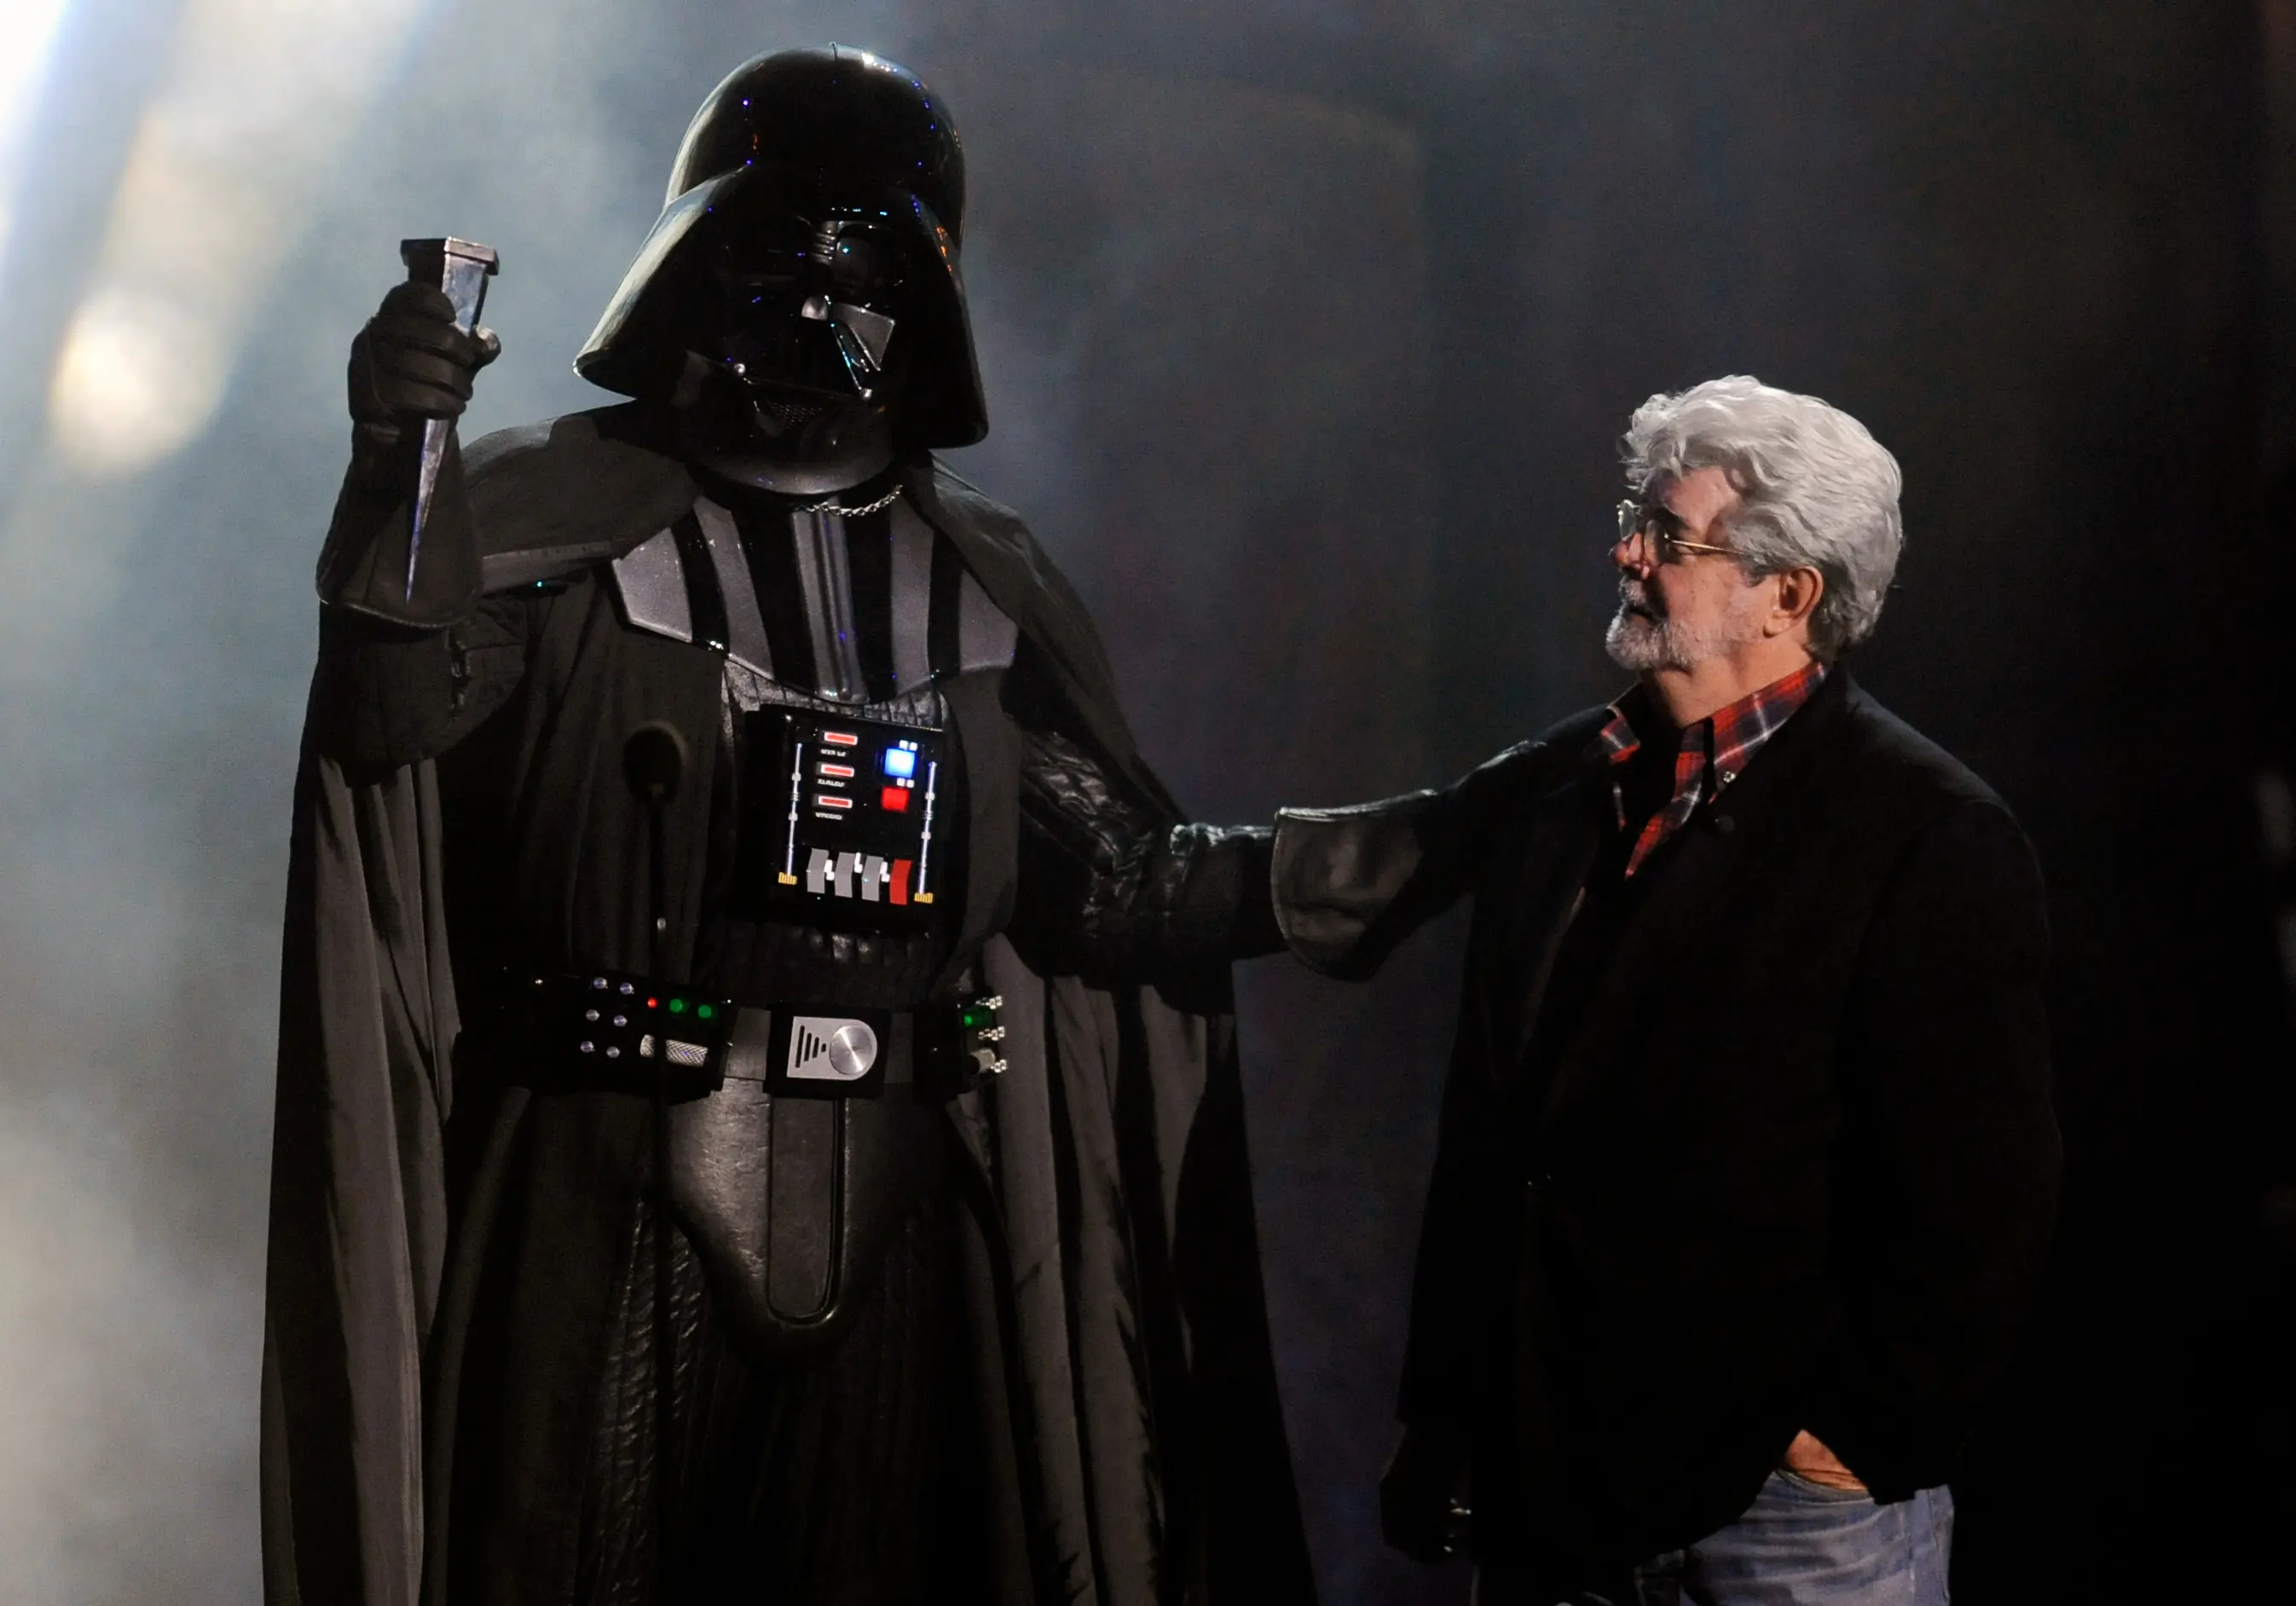 "Mohli jsme toho od něj dostat mnohem více", lituje slavný režisér, že George Lucas zasvětil celou kariéru Star Wars